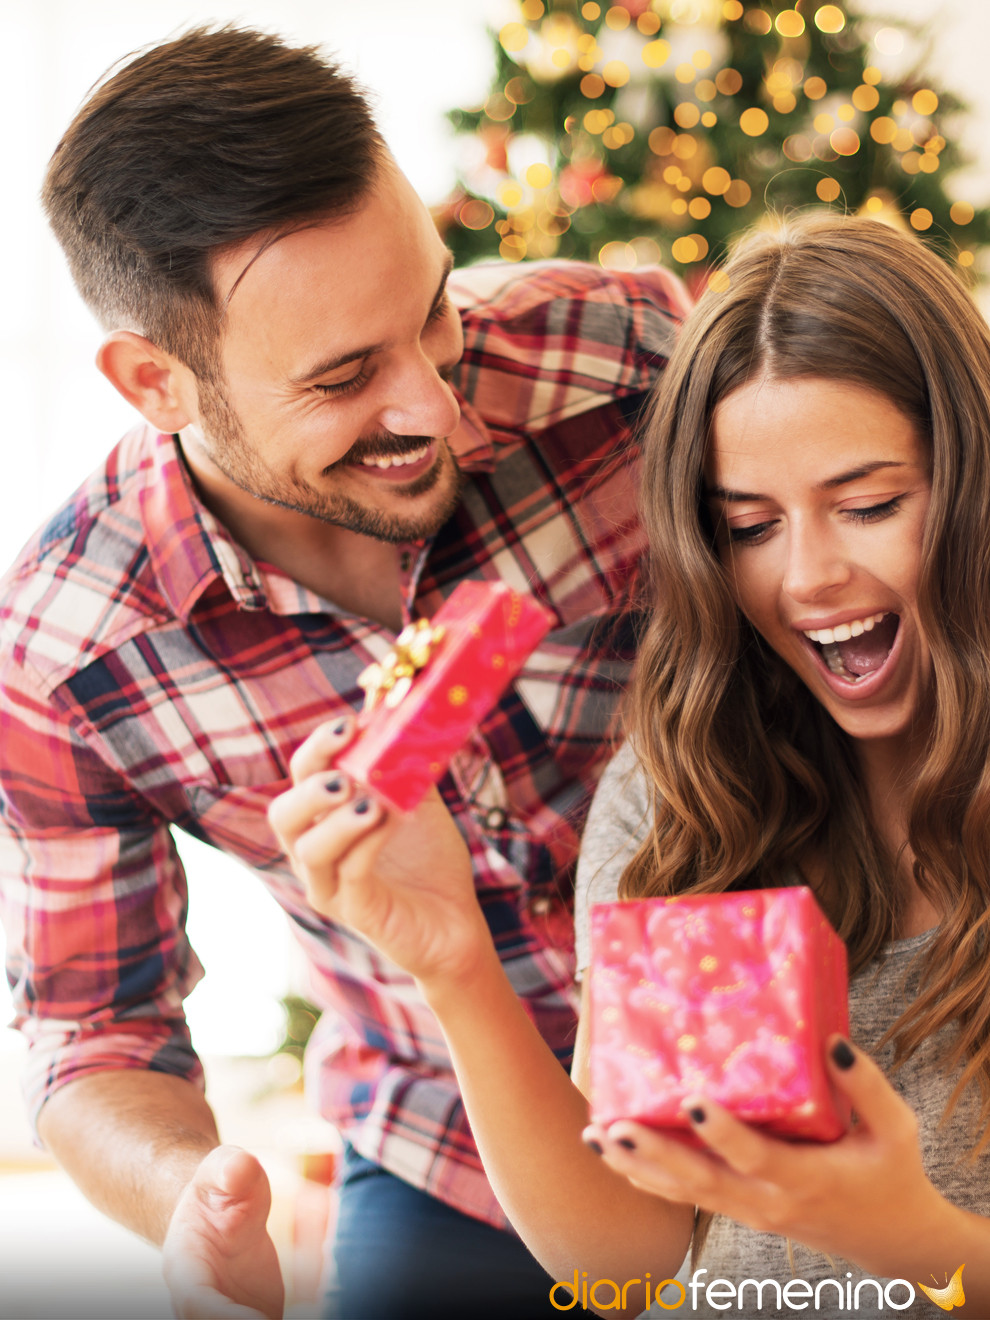 Qué regalar a tu novia en Navidad (si lleváis poco o mucho tiempo juntos)